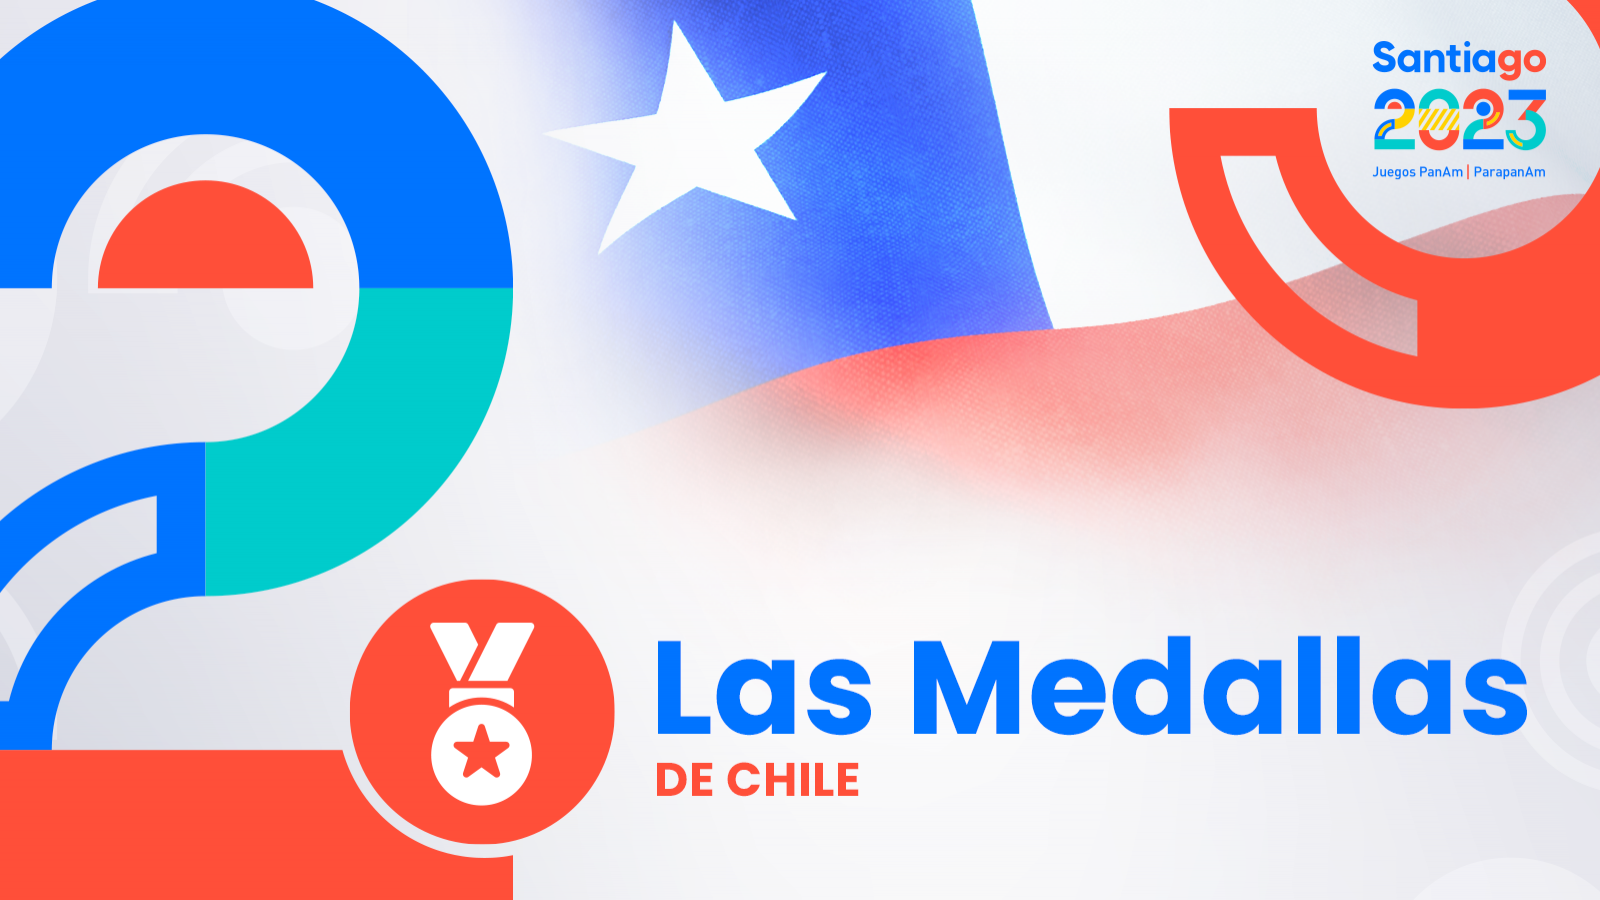 Chilenos que han conseguido medallas en los Juegos Panamericanos Santiago 2023